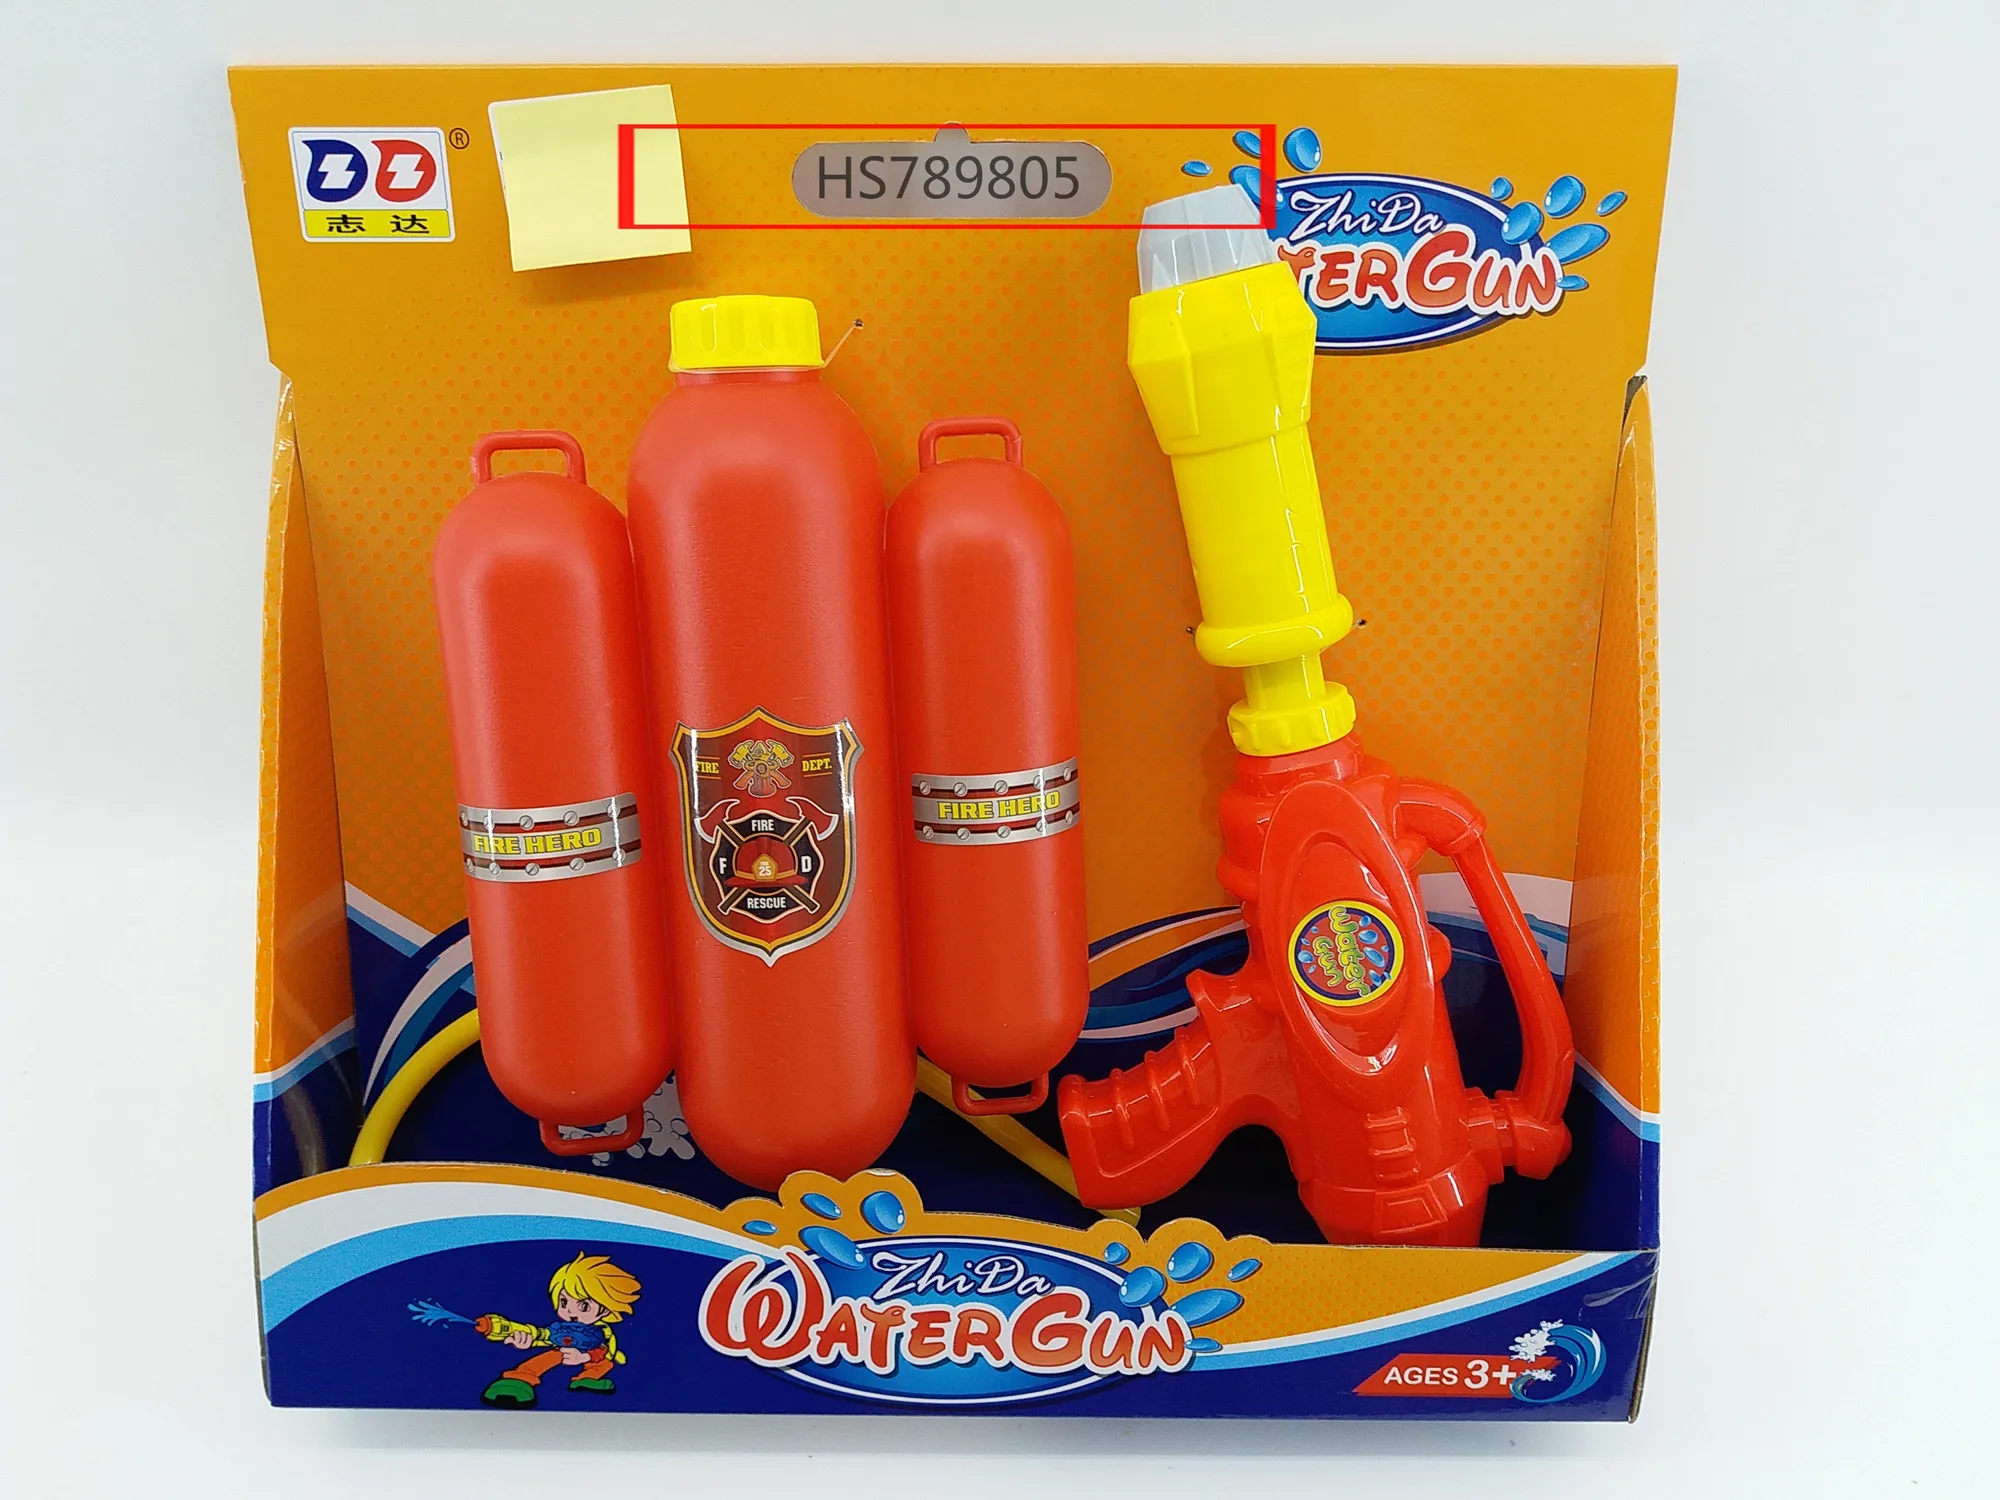 HS789805, Huwsin Toys, Water Gun